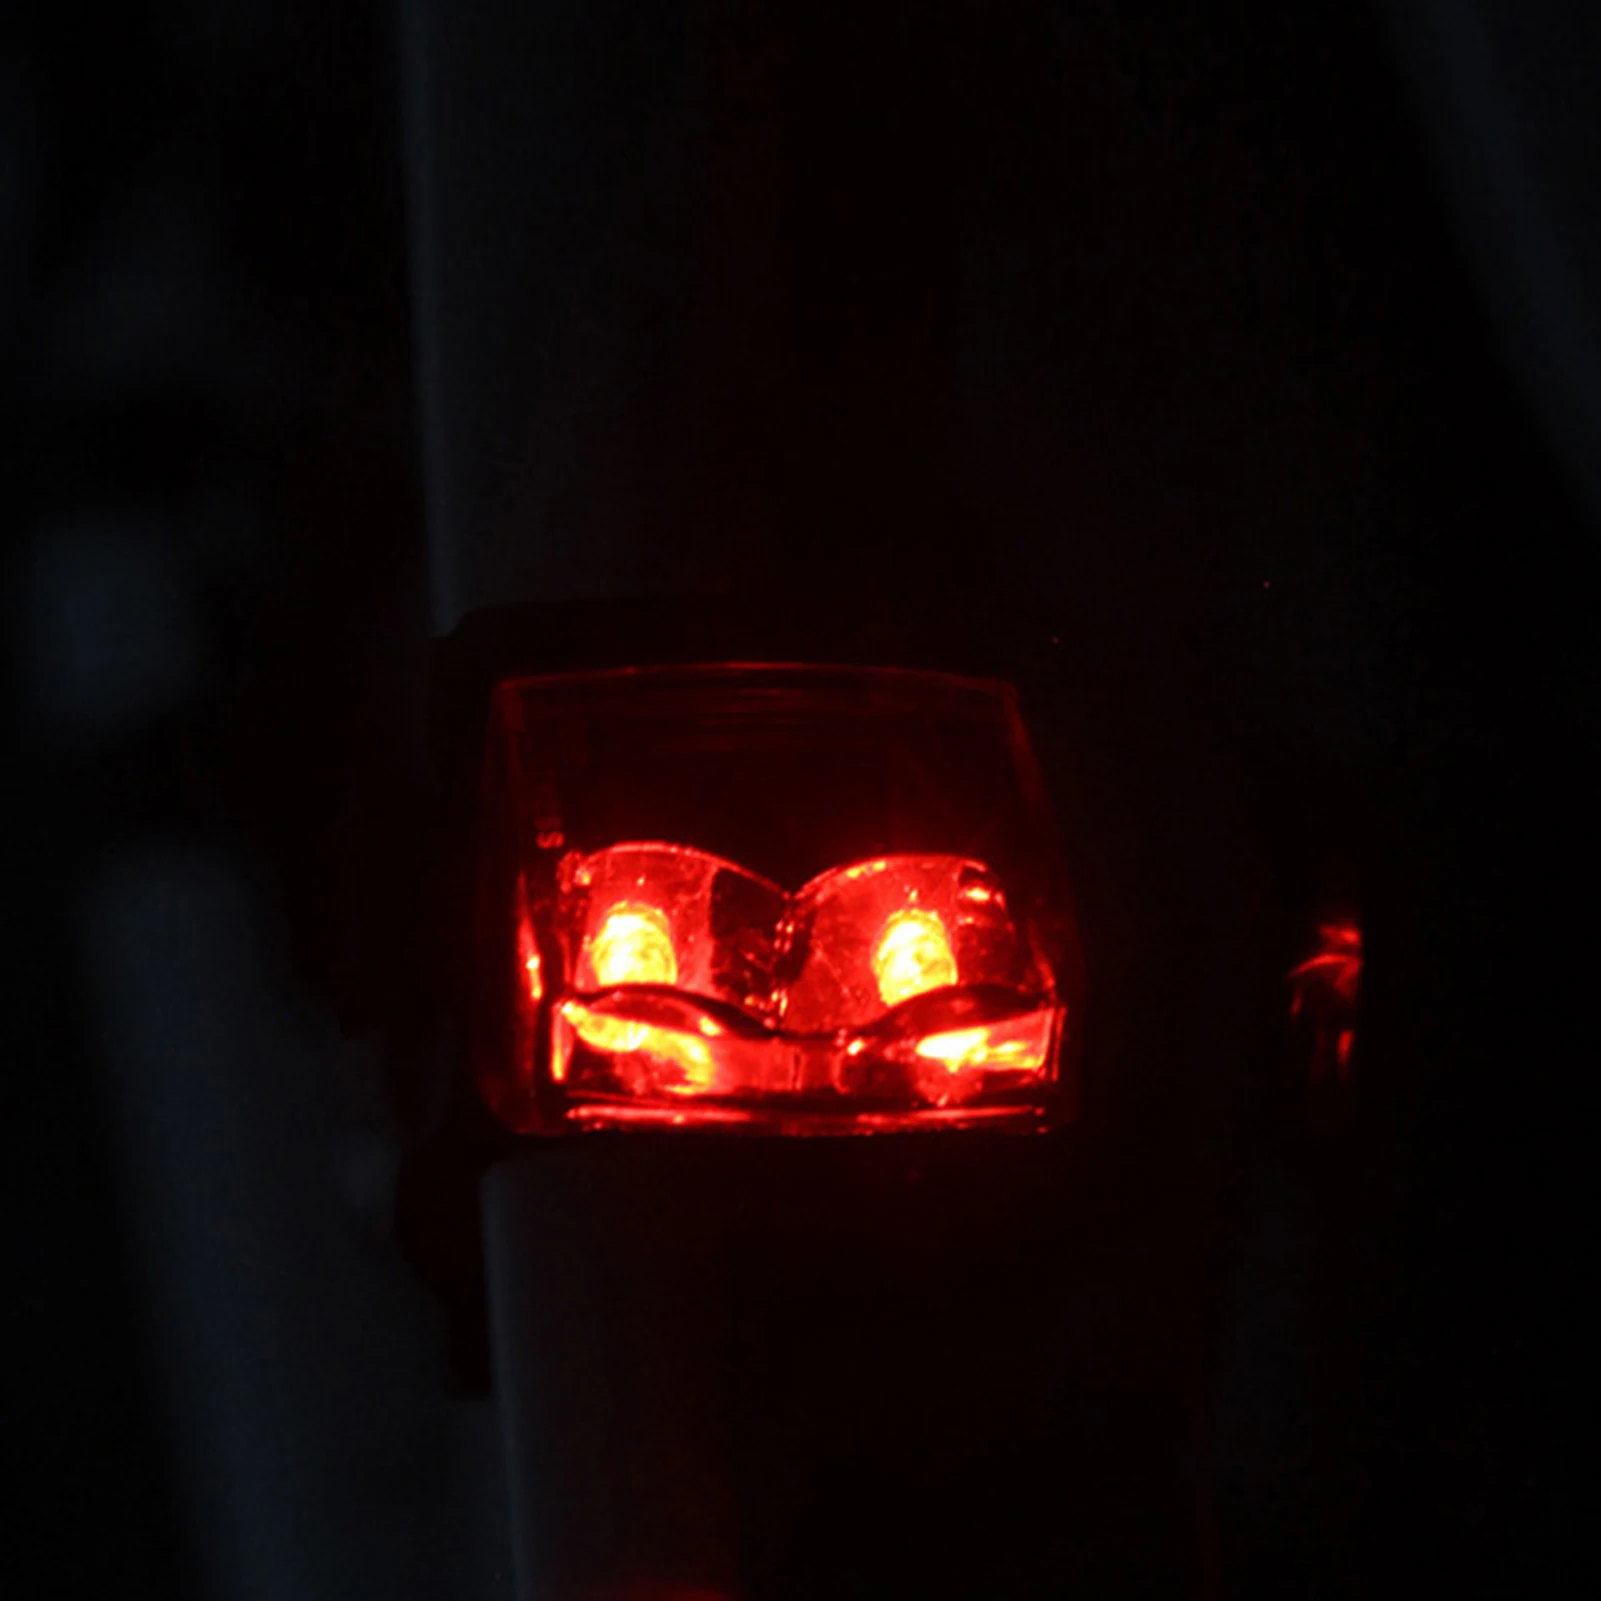 Biciclete Biciclete Inducție Magnetică Coada De Lumină Din Spate Ciclism Impermeabil Lampa De Avertizare Accesorii Pentru Biciclete Piese De Schimb